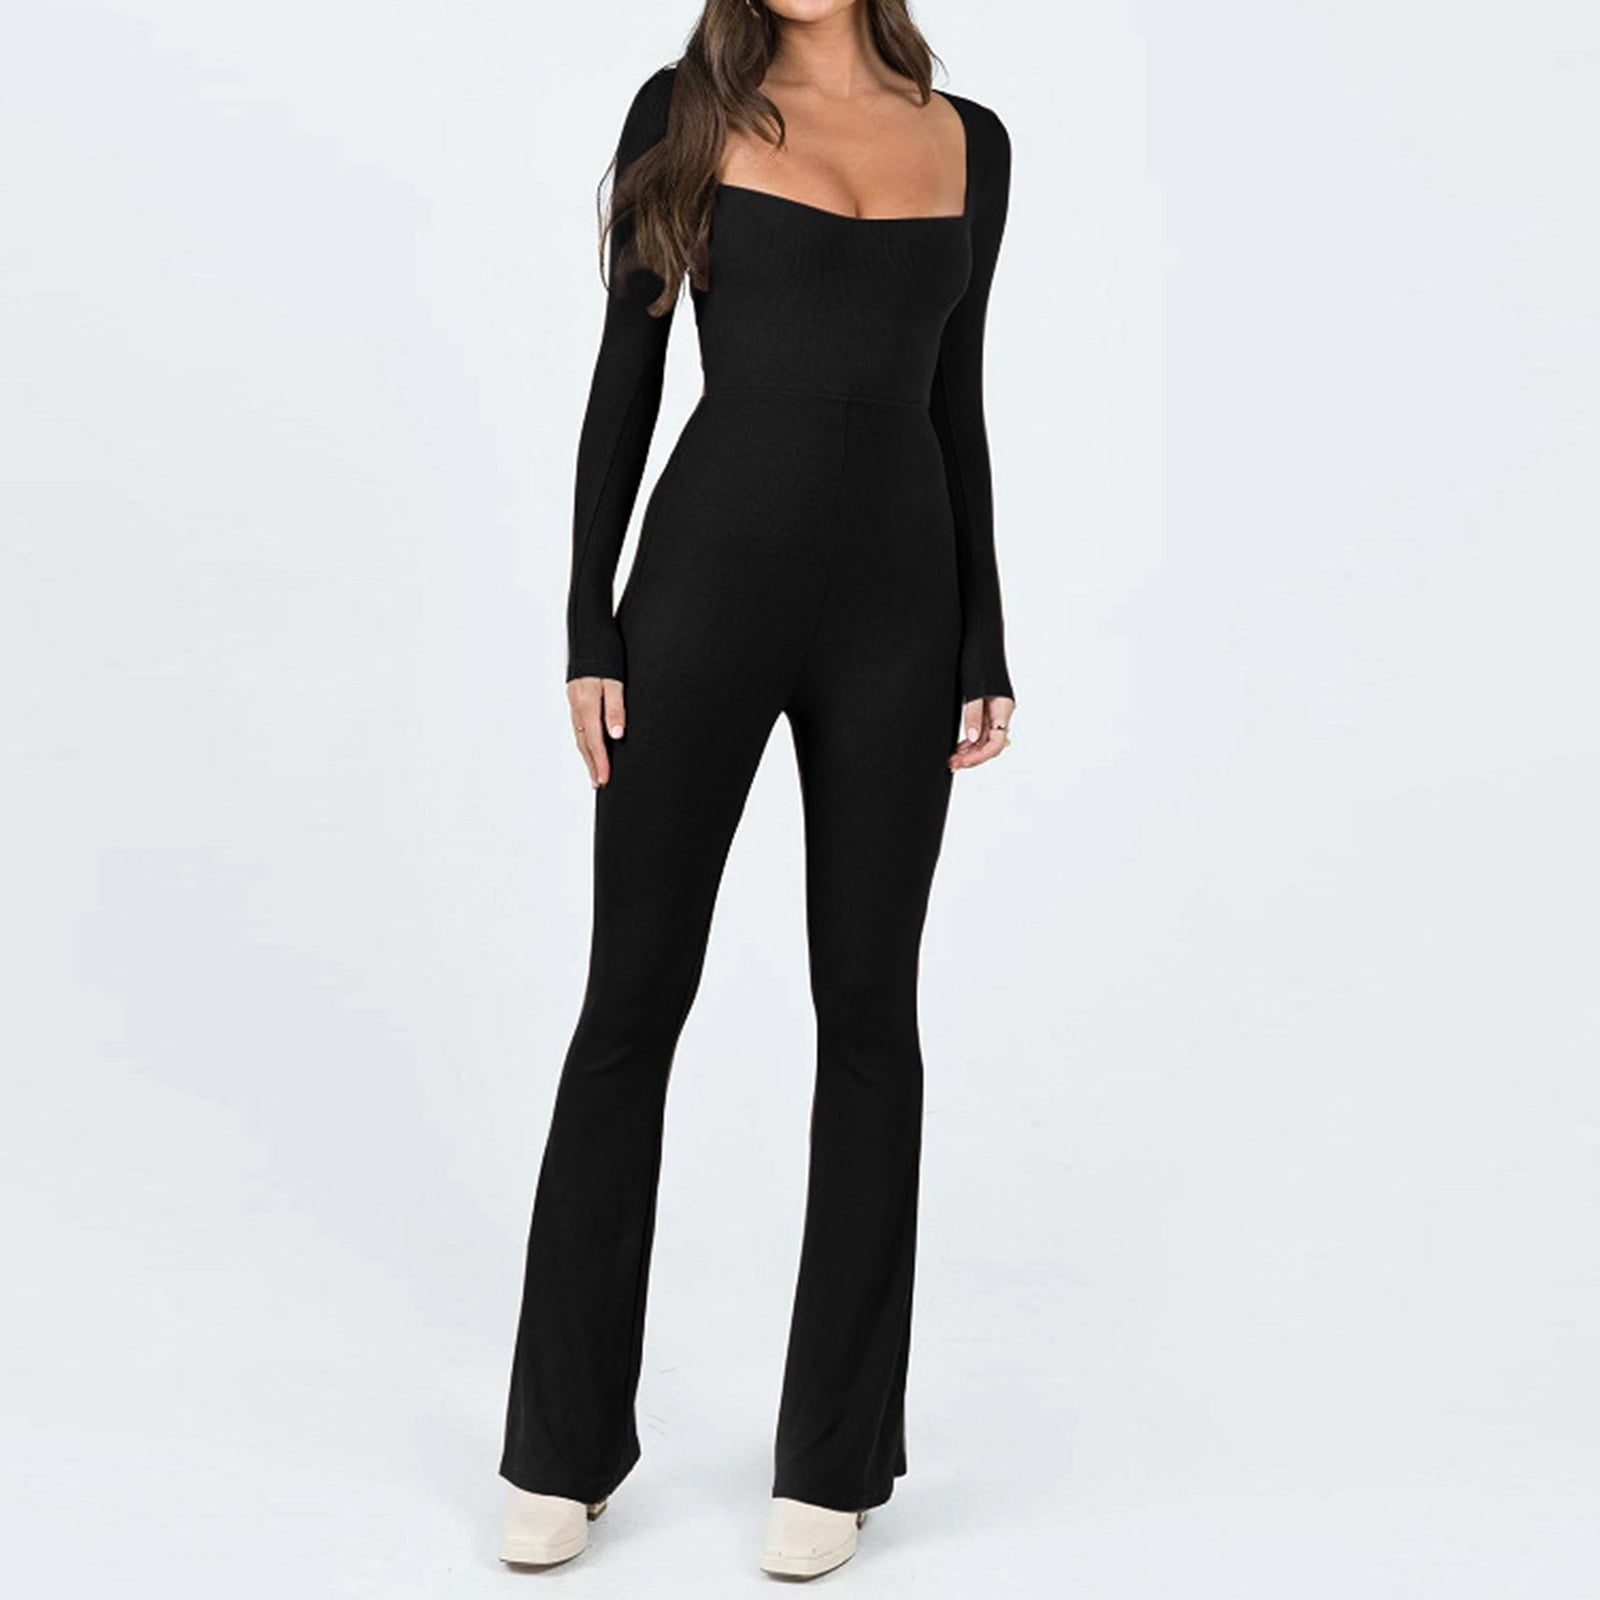 Eliza J Women's Black Long Sleeve Open Back Jumpsuit Romper Size 4 NEW  NWT $188 | eBay